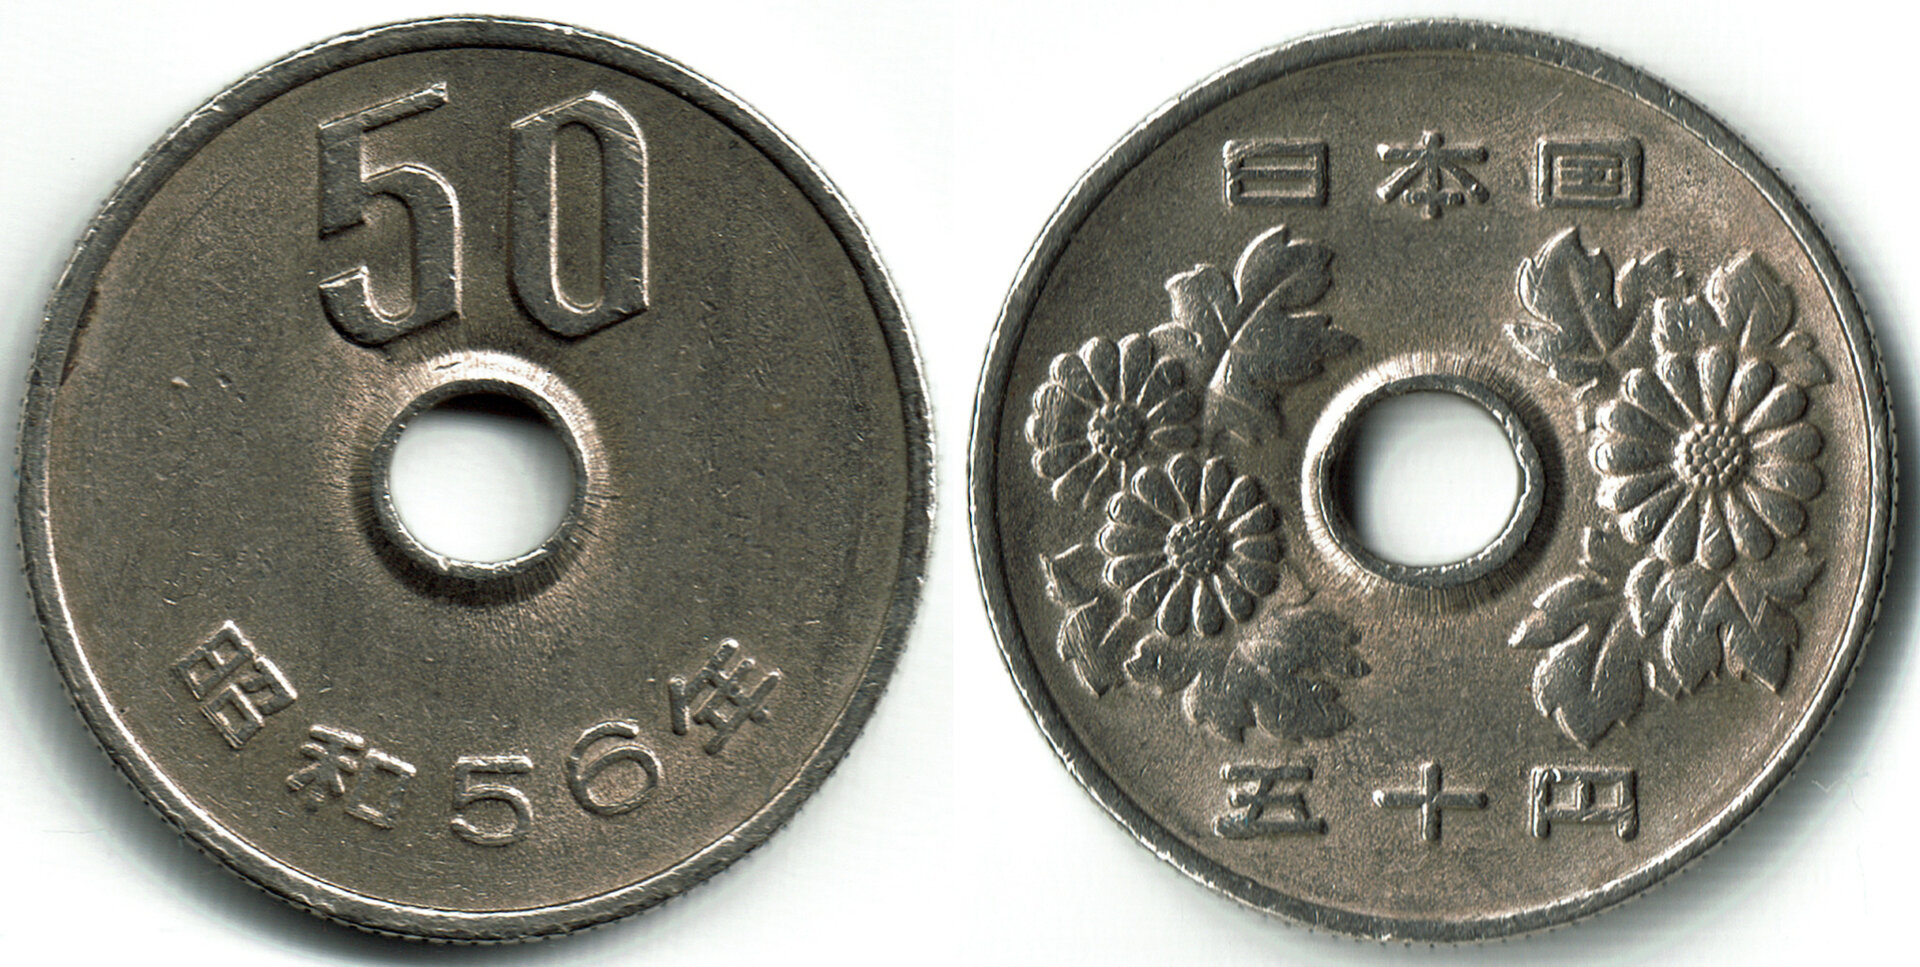 1981 Japan 50 Yen Combined.jpg